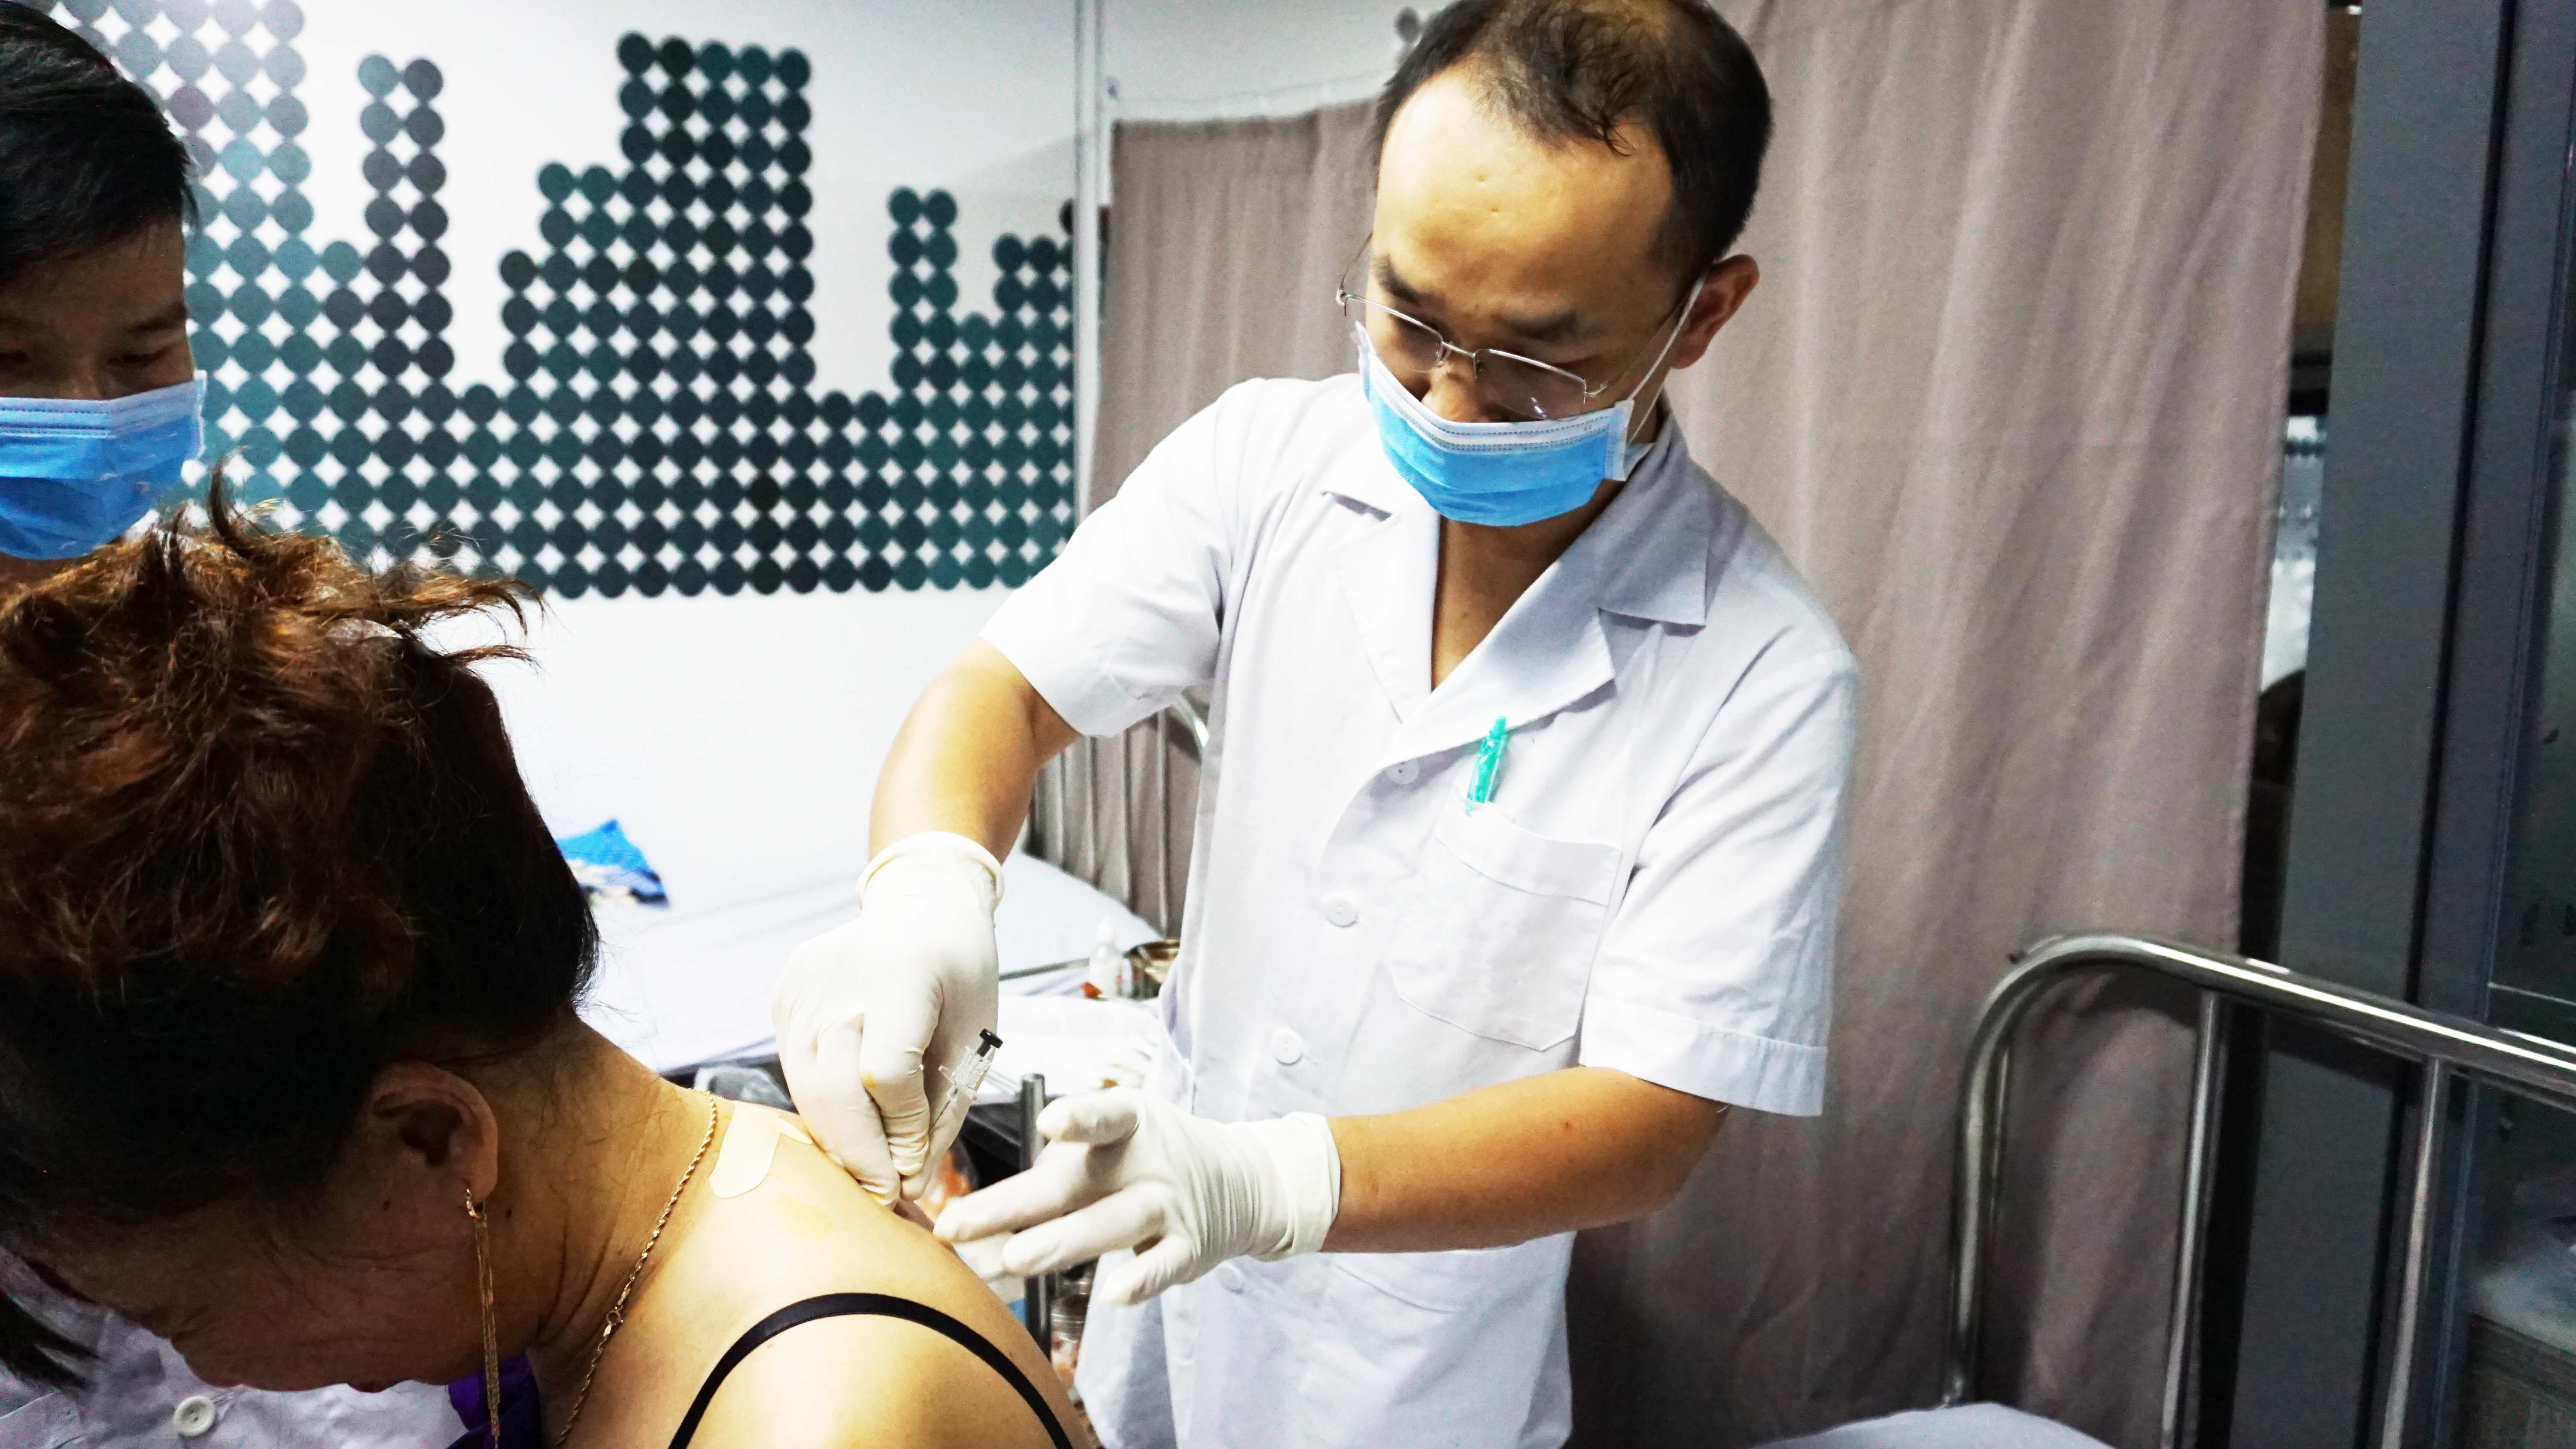 Thạc sĩ bác sĩ Trần Nhật Trường đang cấy chỉ cho bệnh nhân tại chi nhánh cấy chỉ Bình Dương